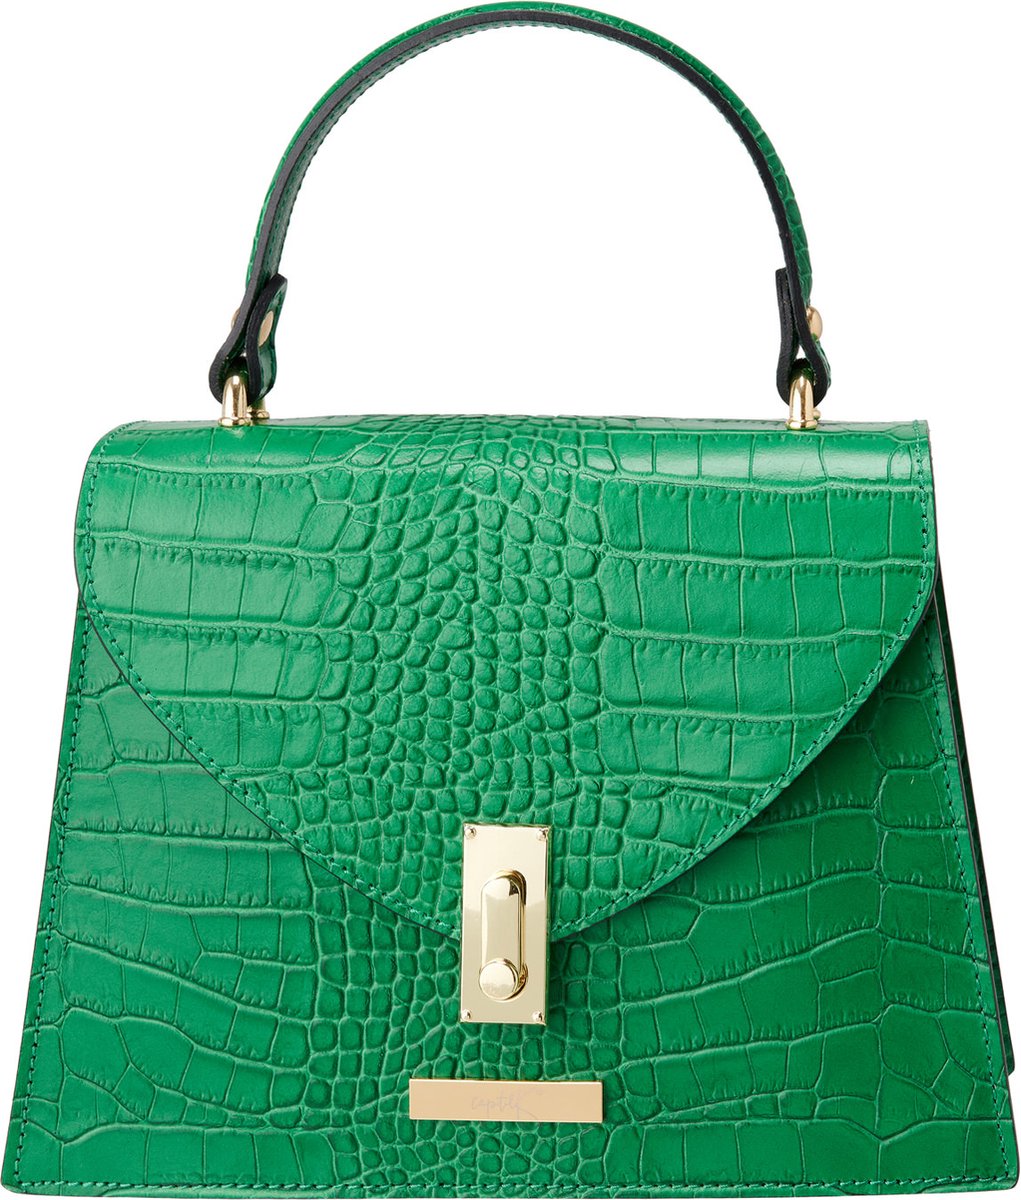 K6 - Fashion bag - Verde